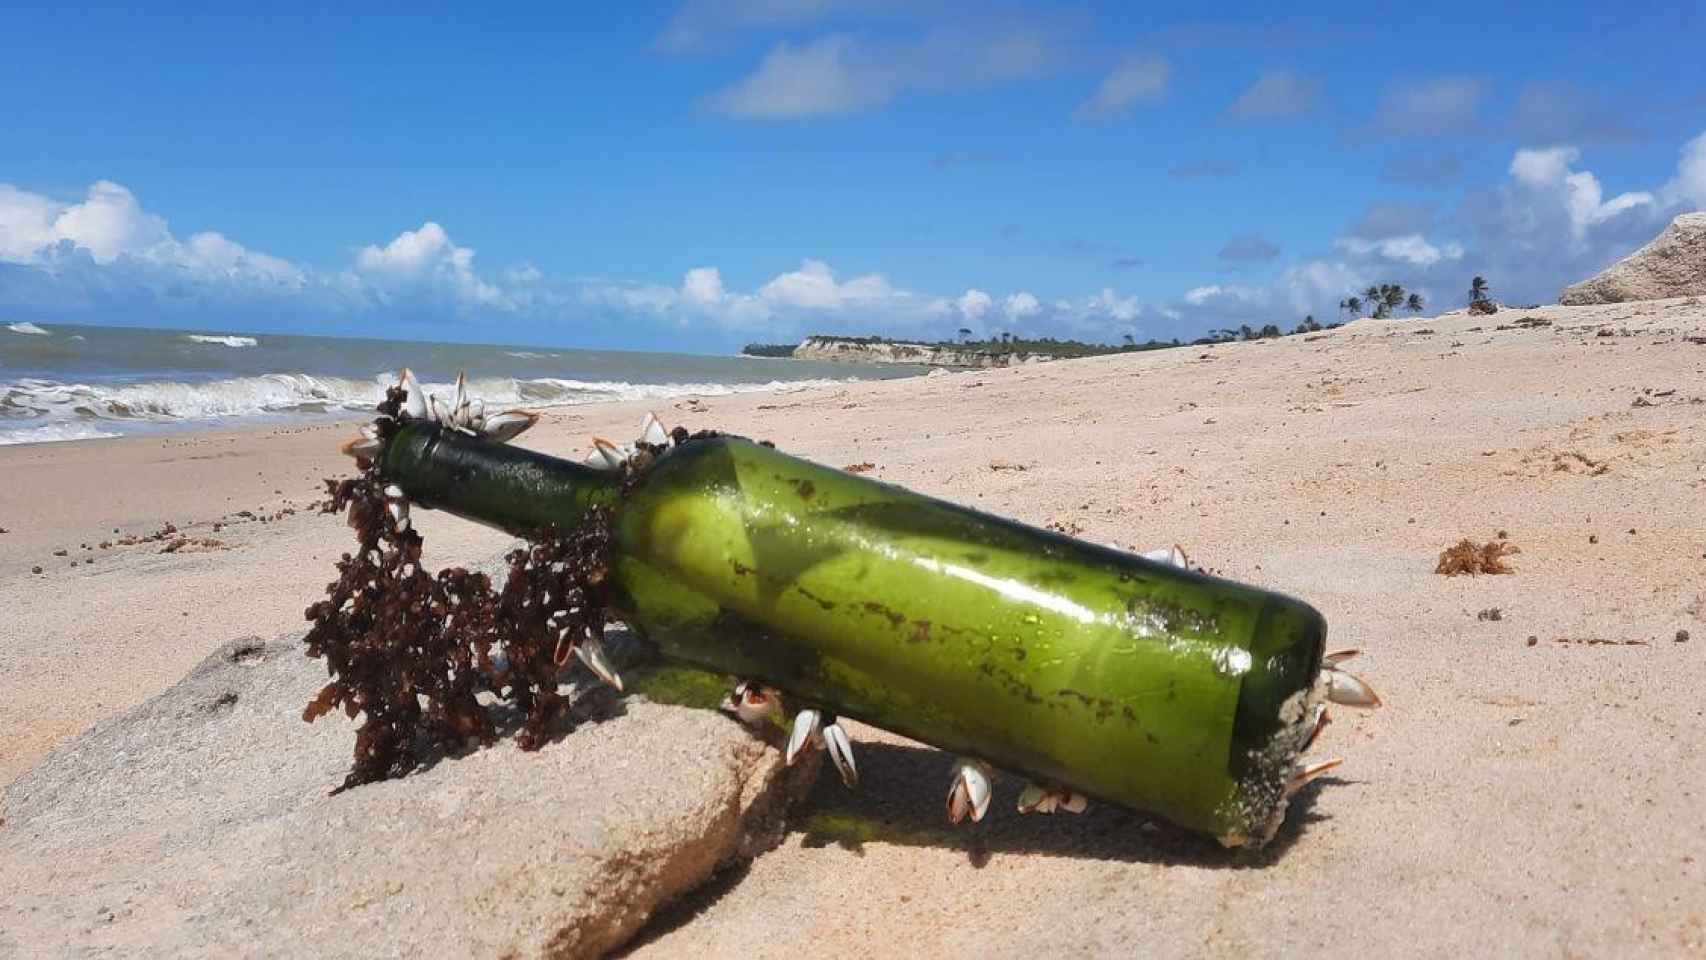 Diseño La botella emitida por el buque Juan Sebastián de Elcano que se encontró una pareja brasileña / TWITTER título   2021 09 20T114129.839